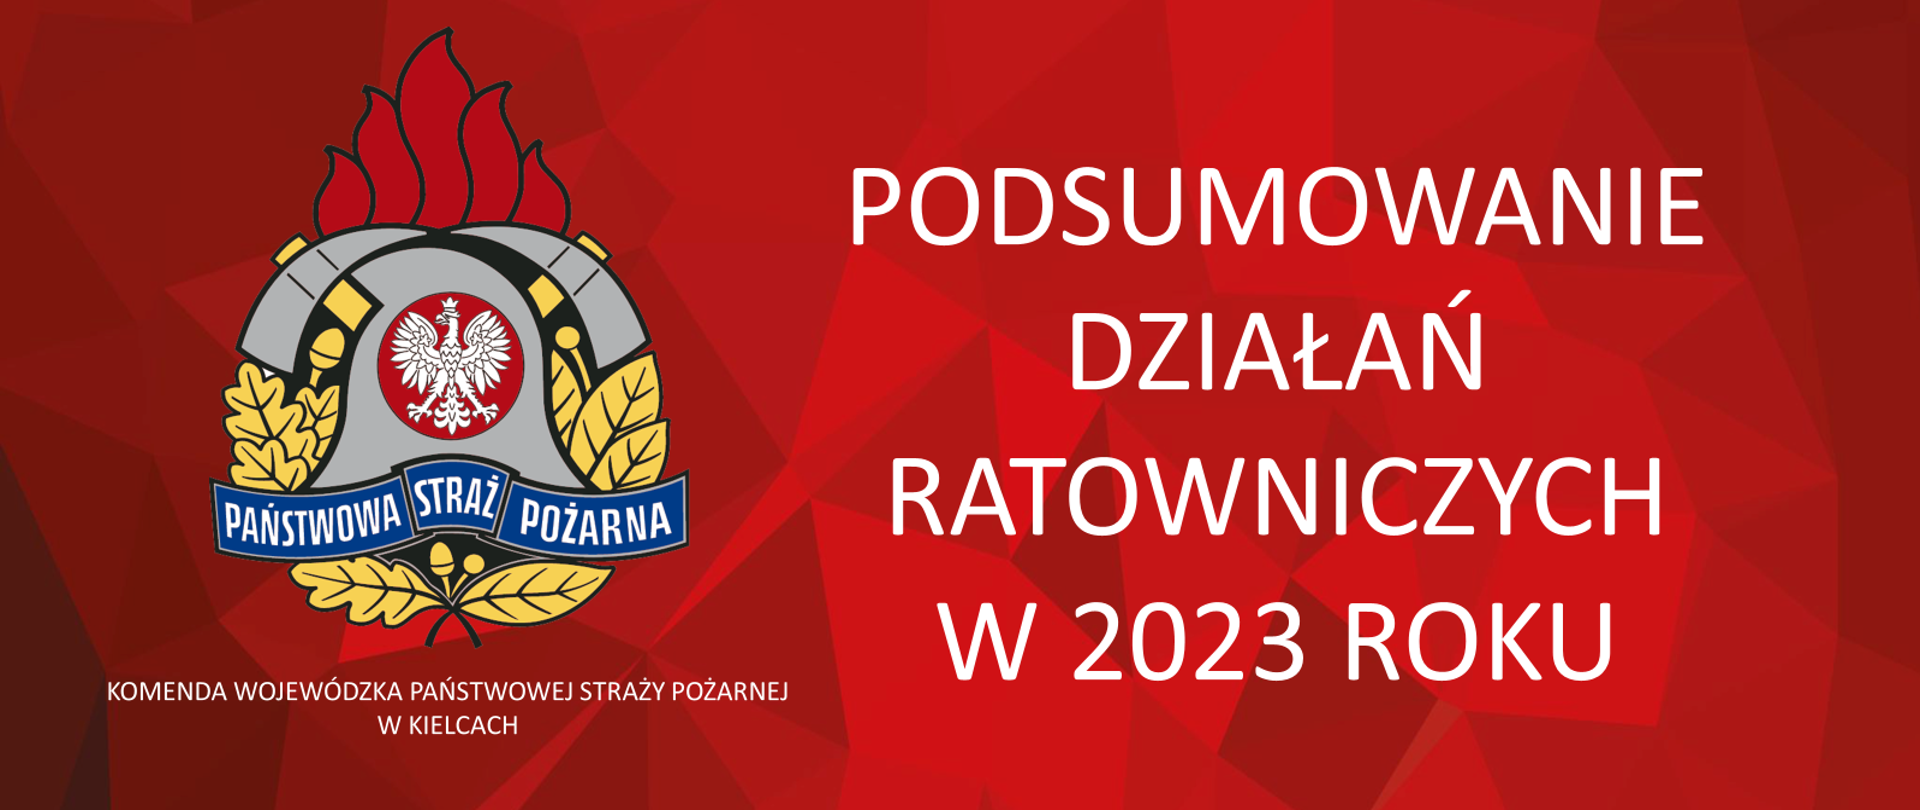 Na grafice na czerwonym tle widzimy z lewej strony logo PSP z podpisem Komenda Wojewódzka Państwowej Straży Pożarnej w Kielcach a po prawej białą czcionką napis Podsumowanie Działań ratowniczych w 2023 roku